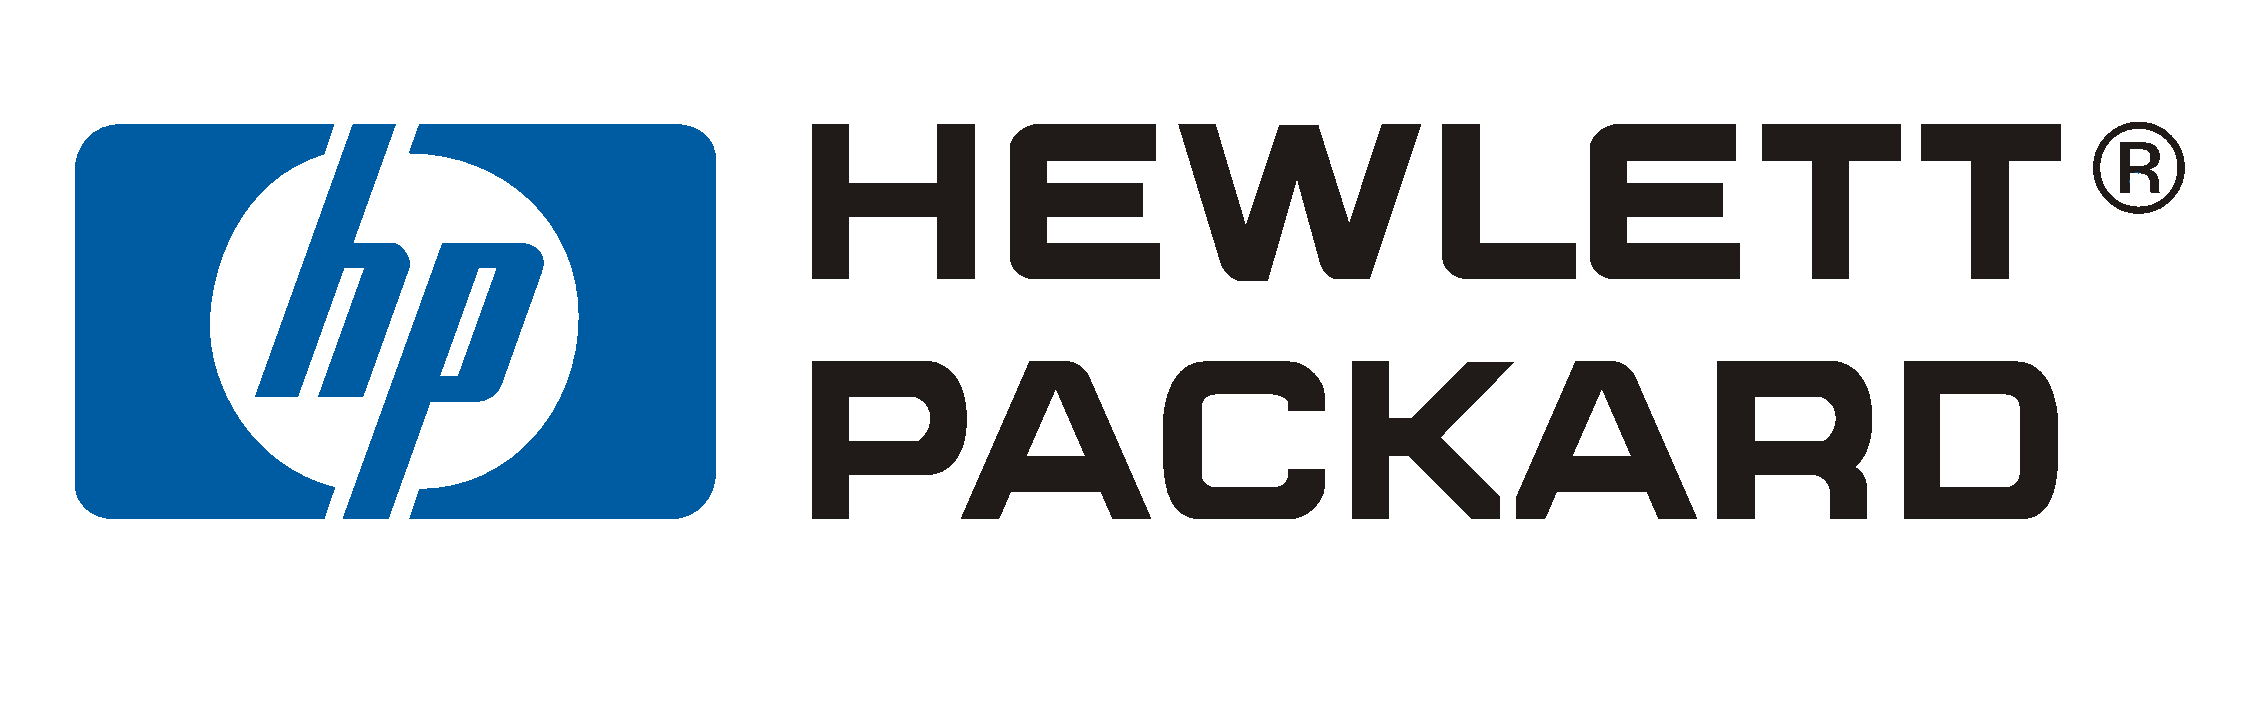 Hewlett-Packard-logo PNG-fotos